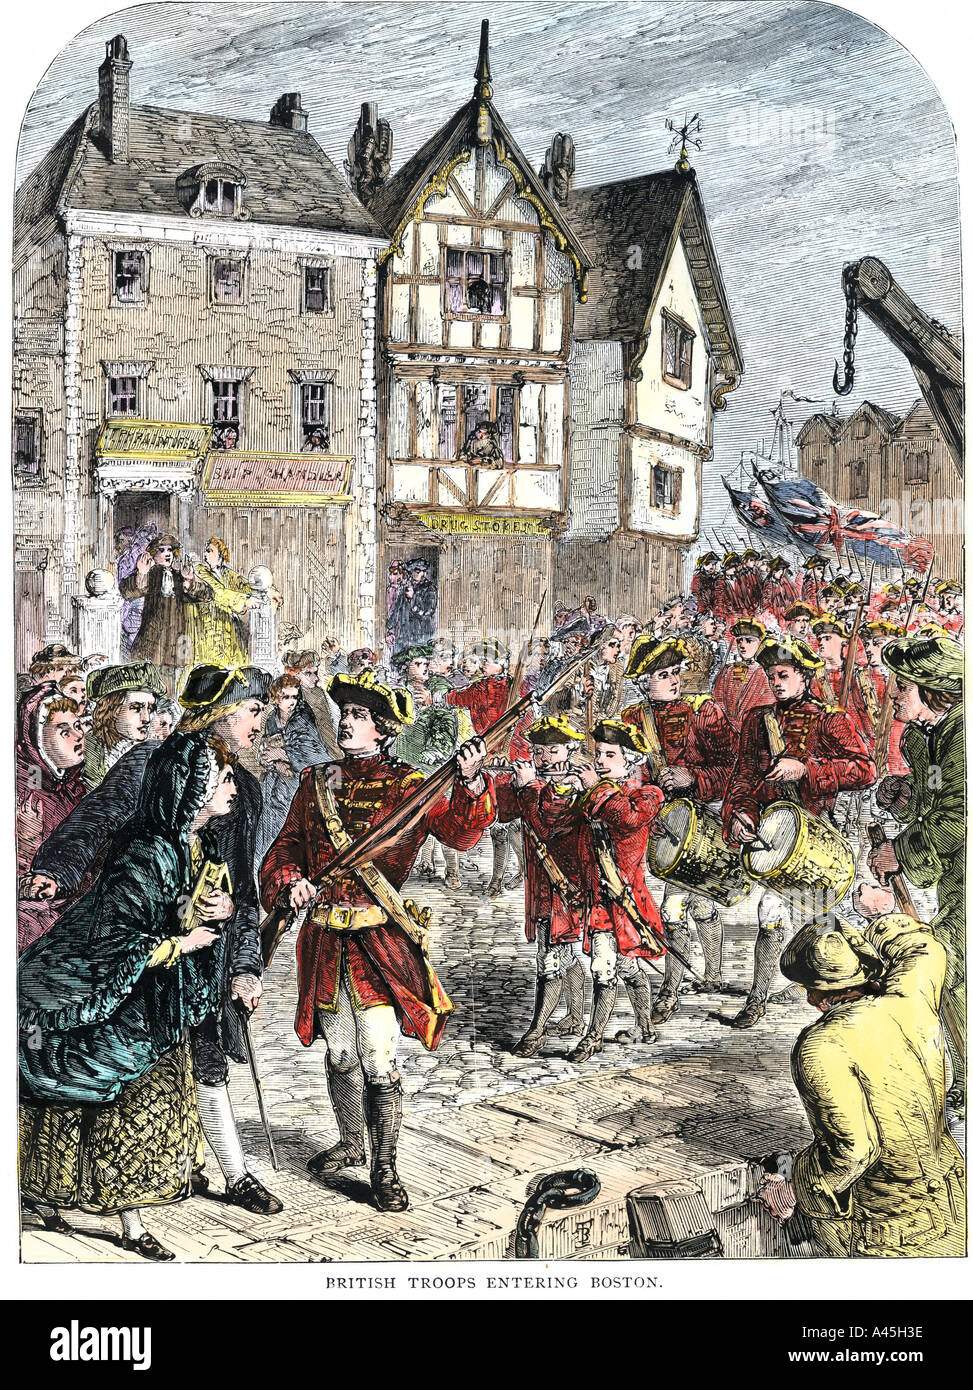 Britische Truppen in Boston Besteuerung und andere Rechtsvorschriften der Kolonialzeit vor der Amerikanischen Revolution durchzusetzen. Hand - farbige Holzschnitt Stockfoto